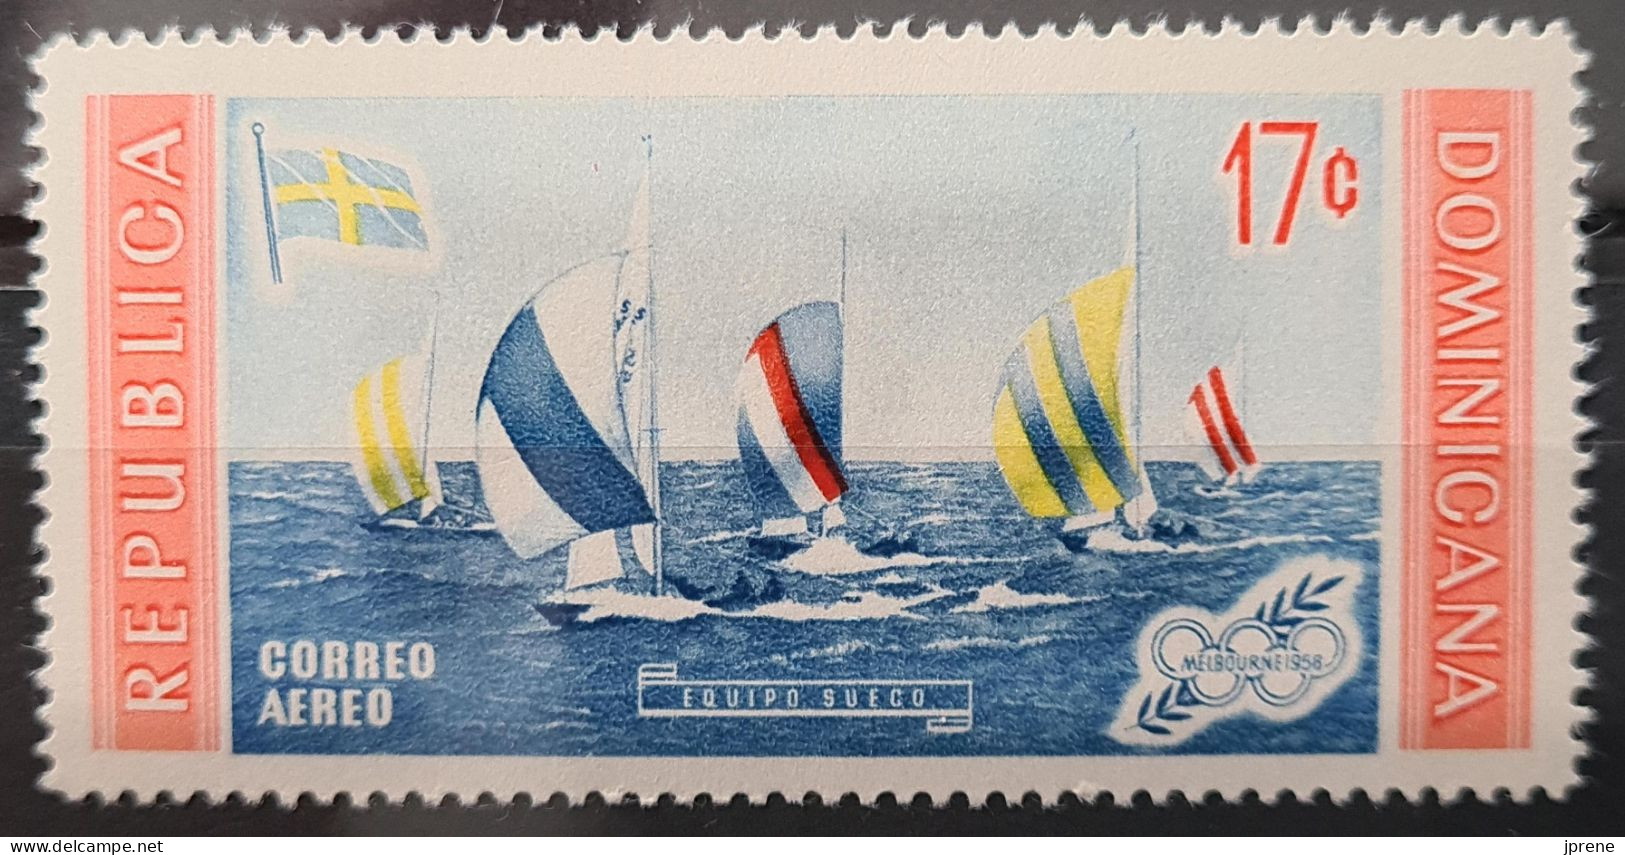 Lots de timbres sur le thème - JEUX OLYMPIQUES - Offre groupée, PROMO SPECIALE J.O. -50%, cote 164€